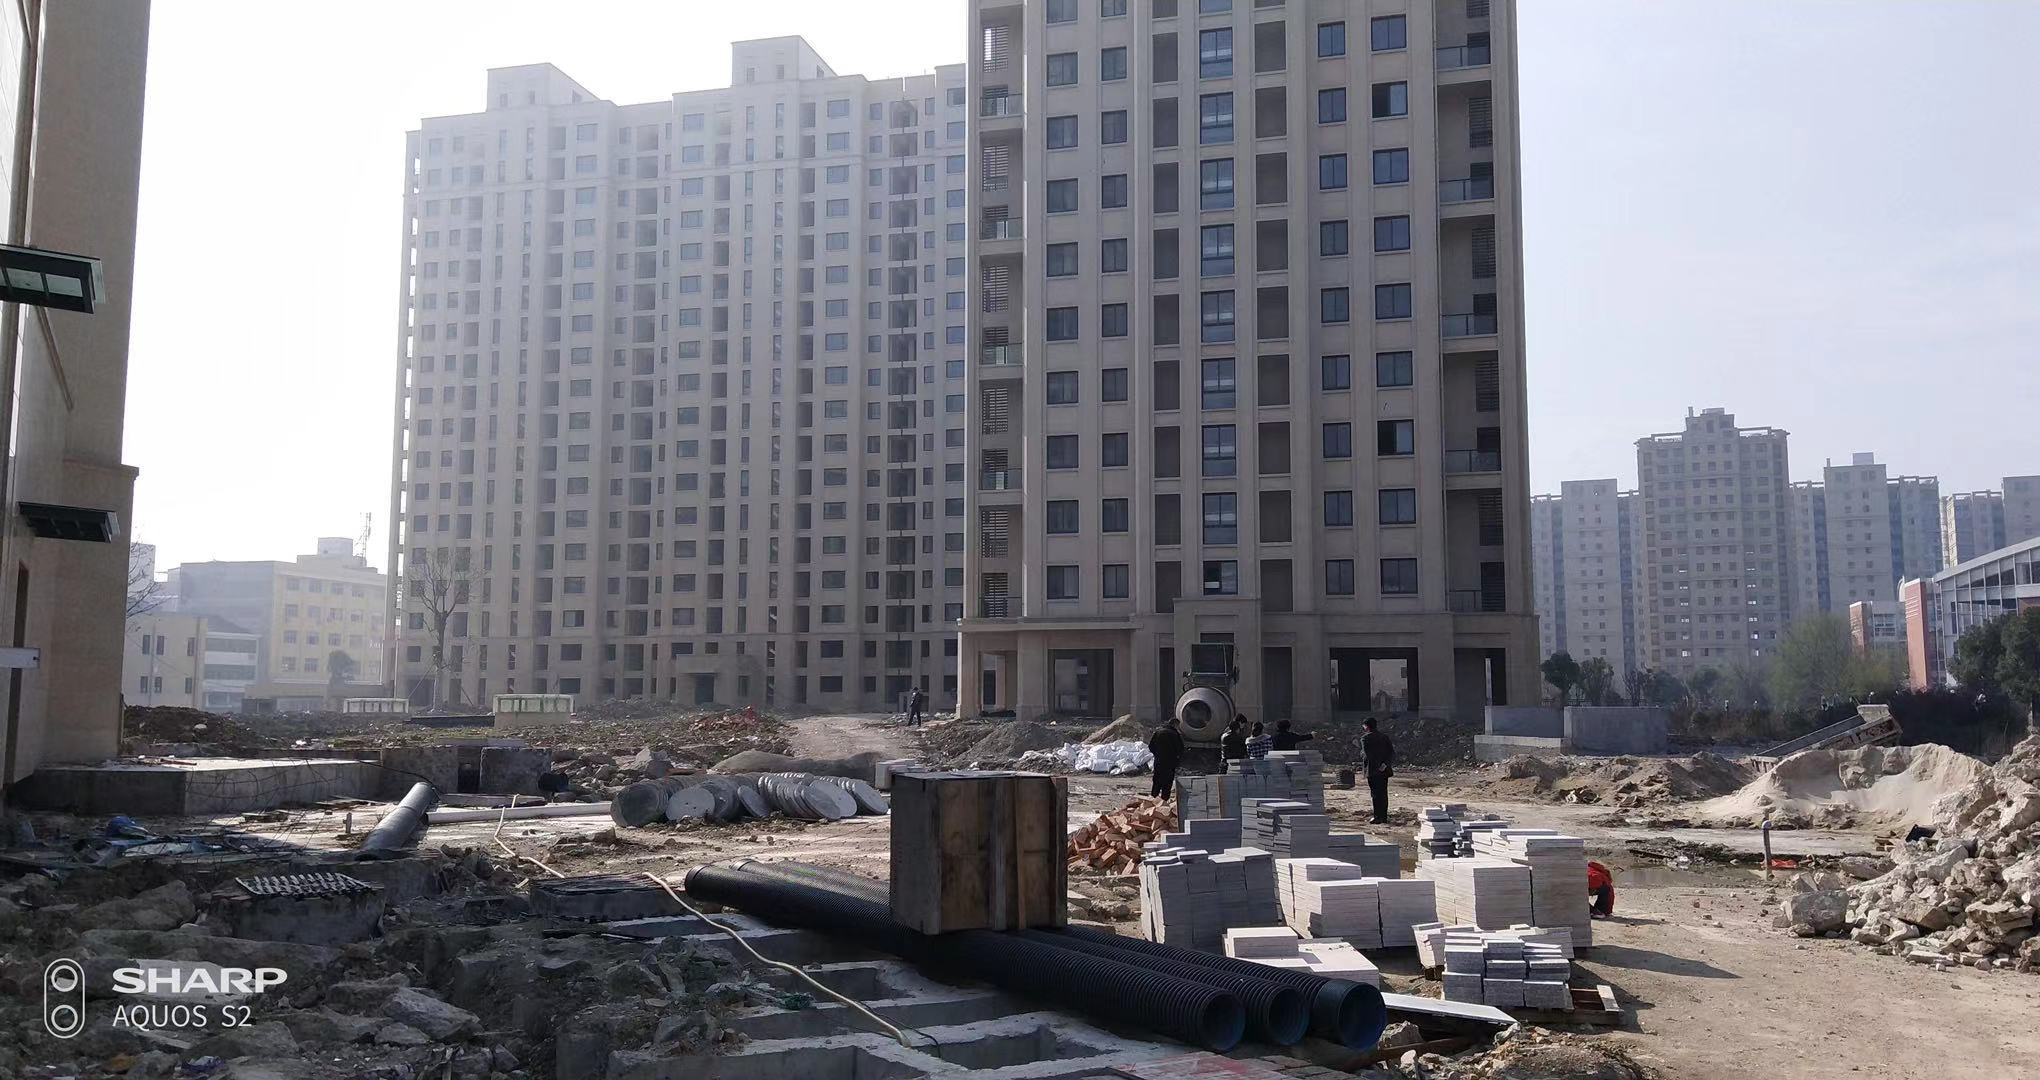 浙江台州的烂尾楼项目经由88位业主联合维权终于住进了温暖的新房